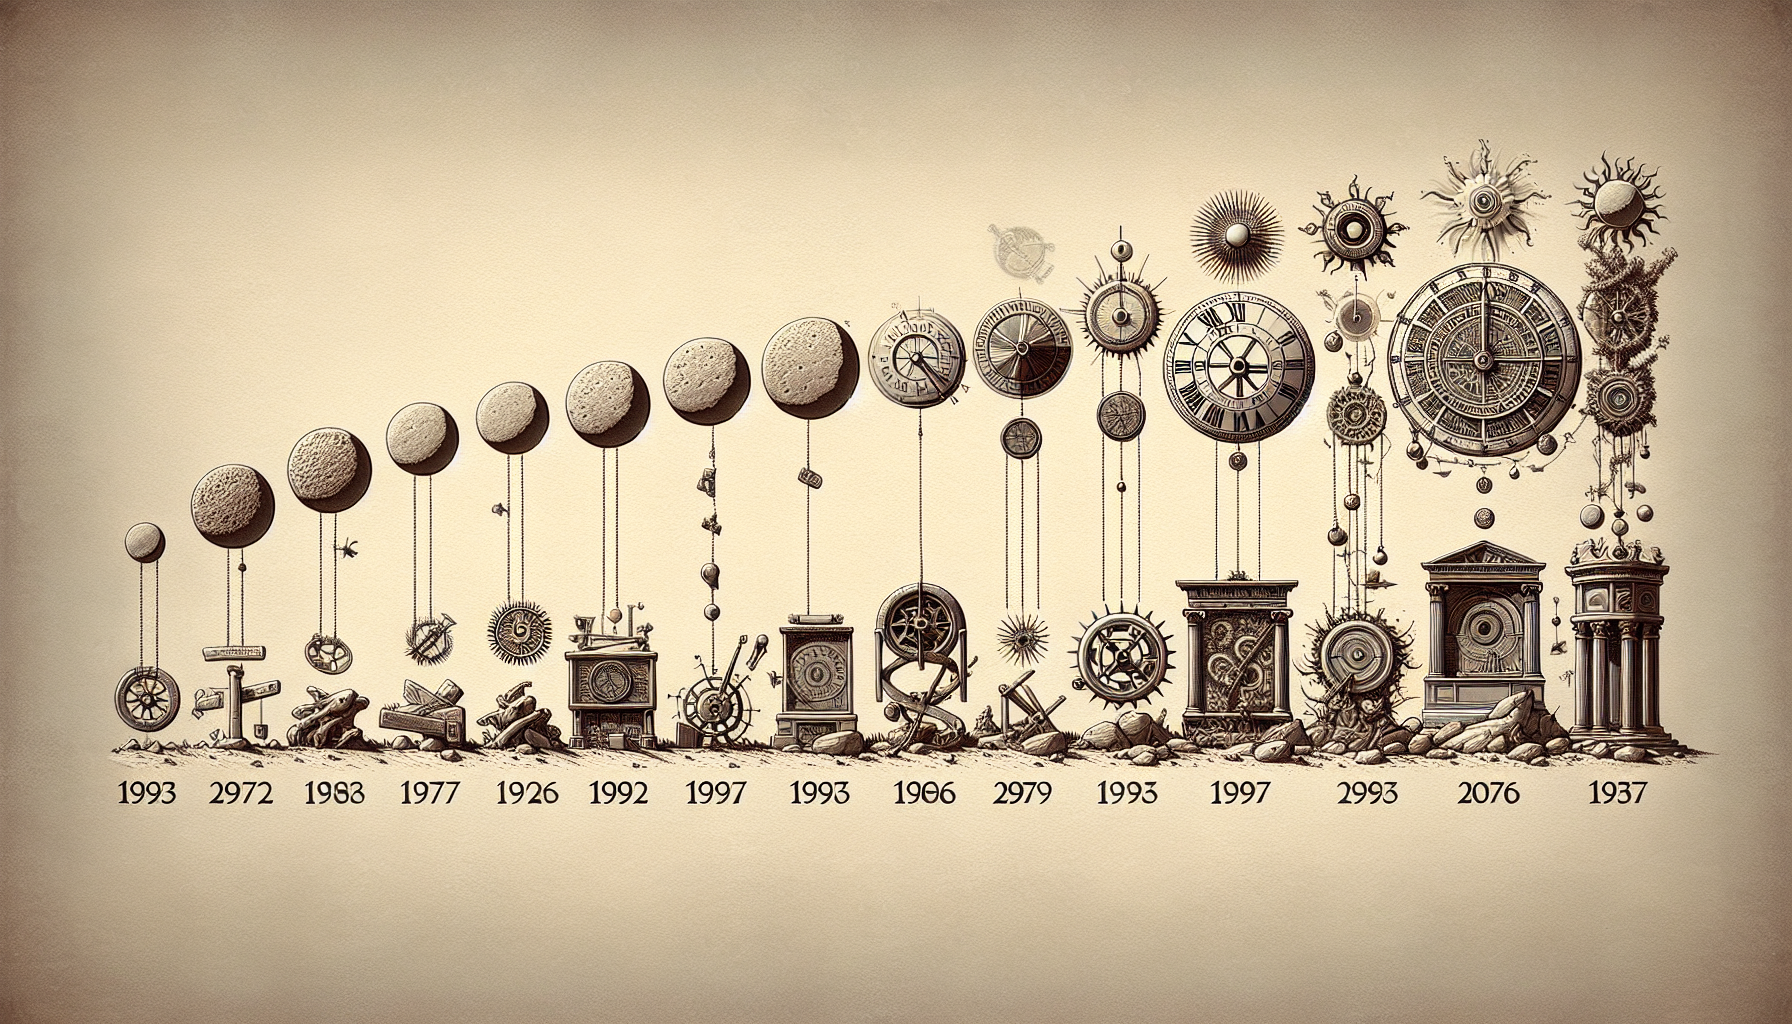 Evolution of Saturnalia Through Time